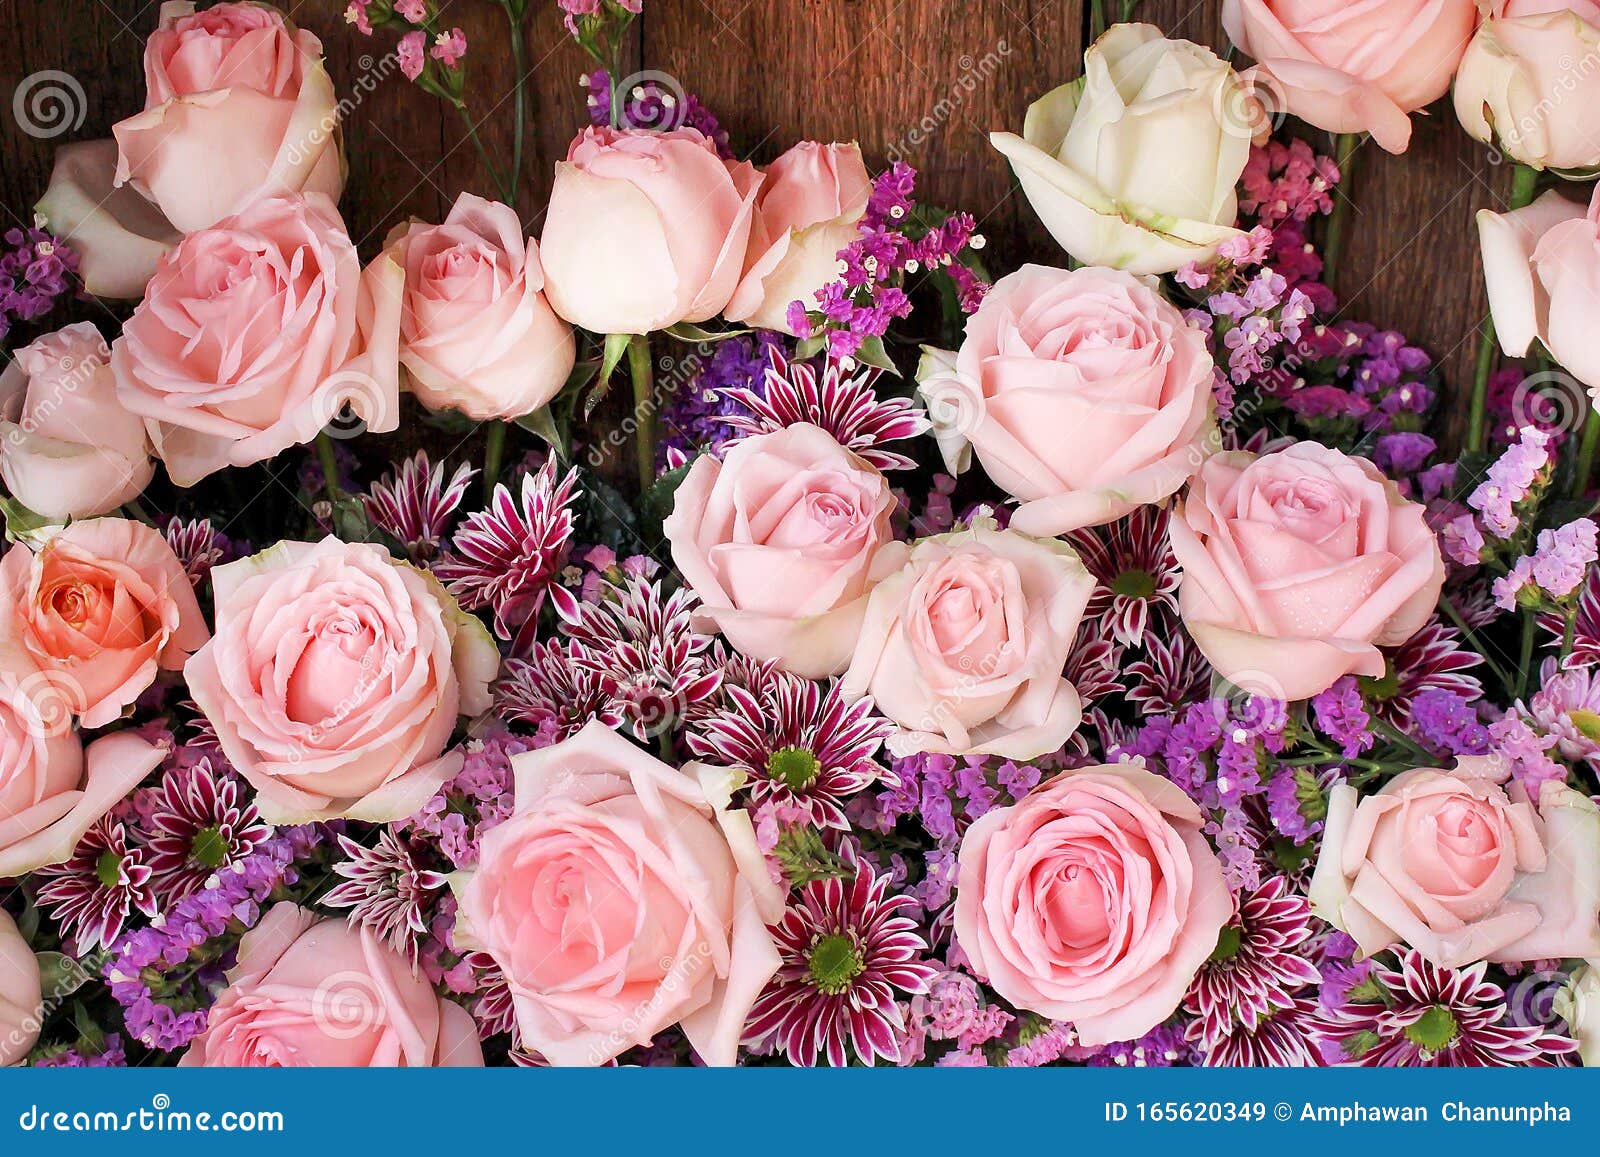 用水滴背景绽放的粉色玫瑰花束图案 用于壁纸情人节或结婚卡背景库存图片 图片包括有用水滴背景绽放的粉色玫瑰花束图案 用于壁纸情人节或结婚卡背景